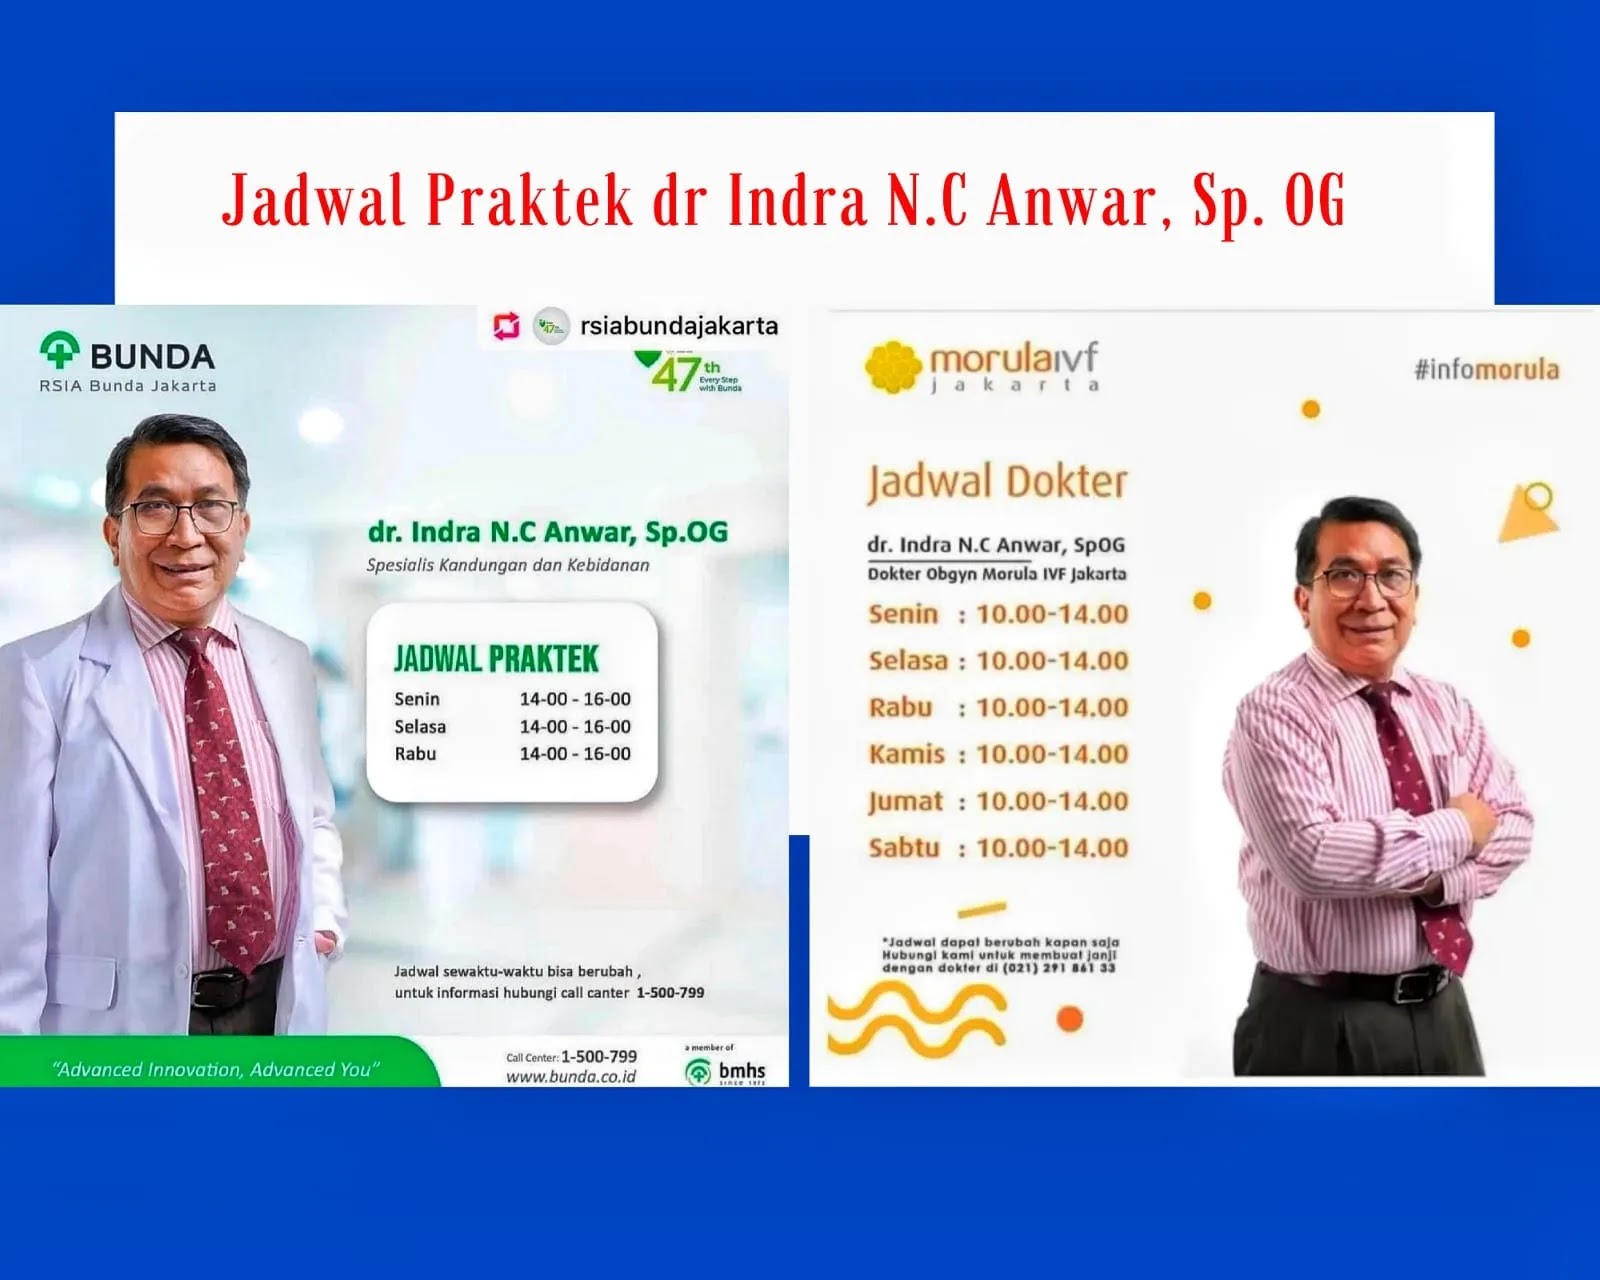 Jadwal praktek dr Indra